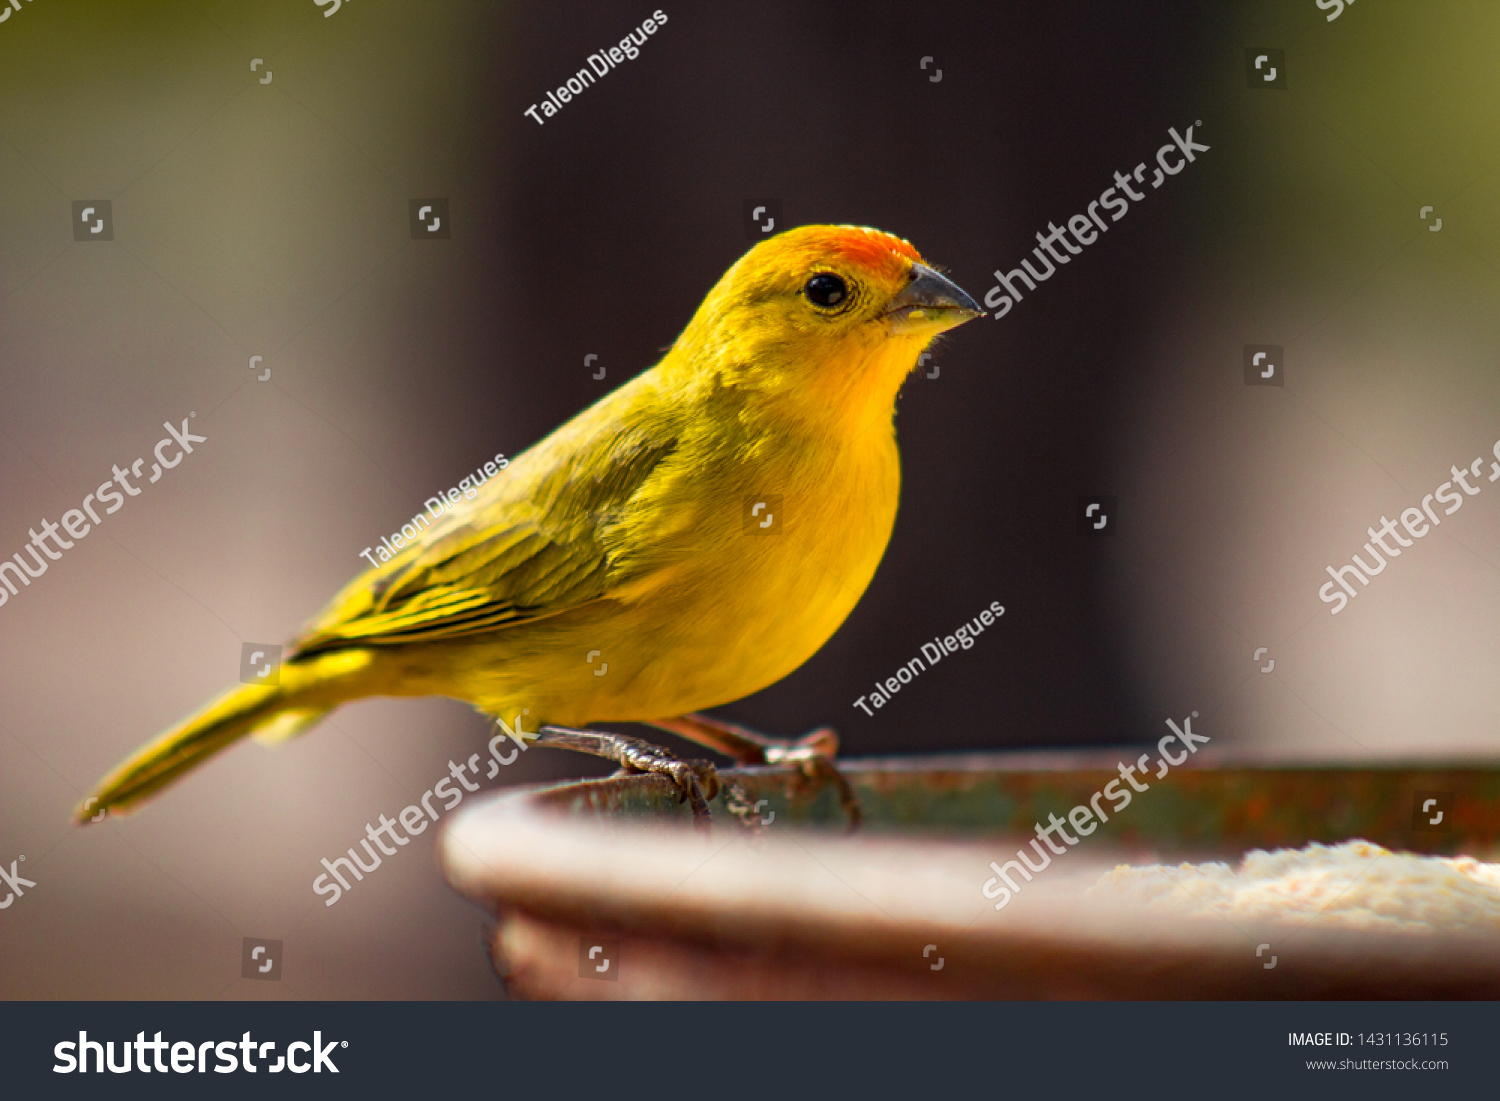 Canário-da-terra-verdadeiro (Sicalis flaveola). The true canary (Sicalis flaveola). Sitting feeding. #1431136115